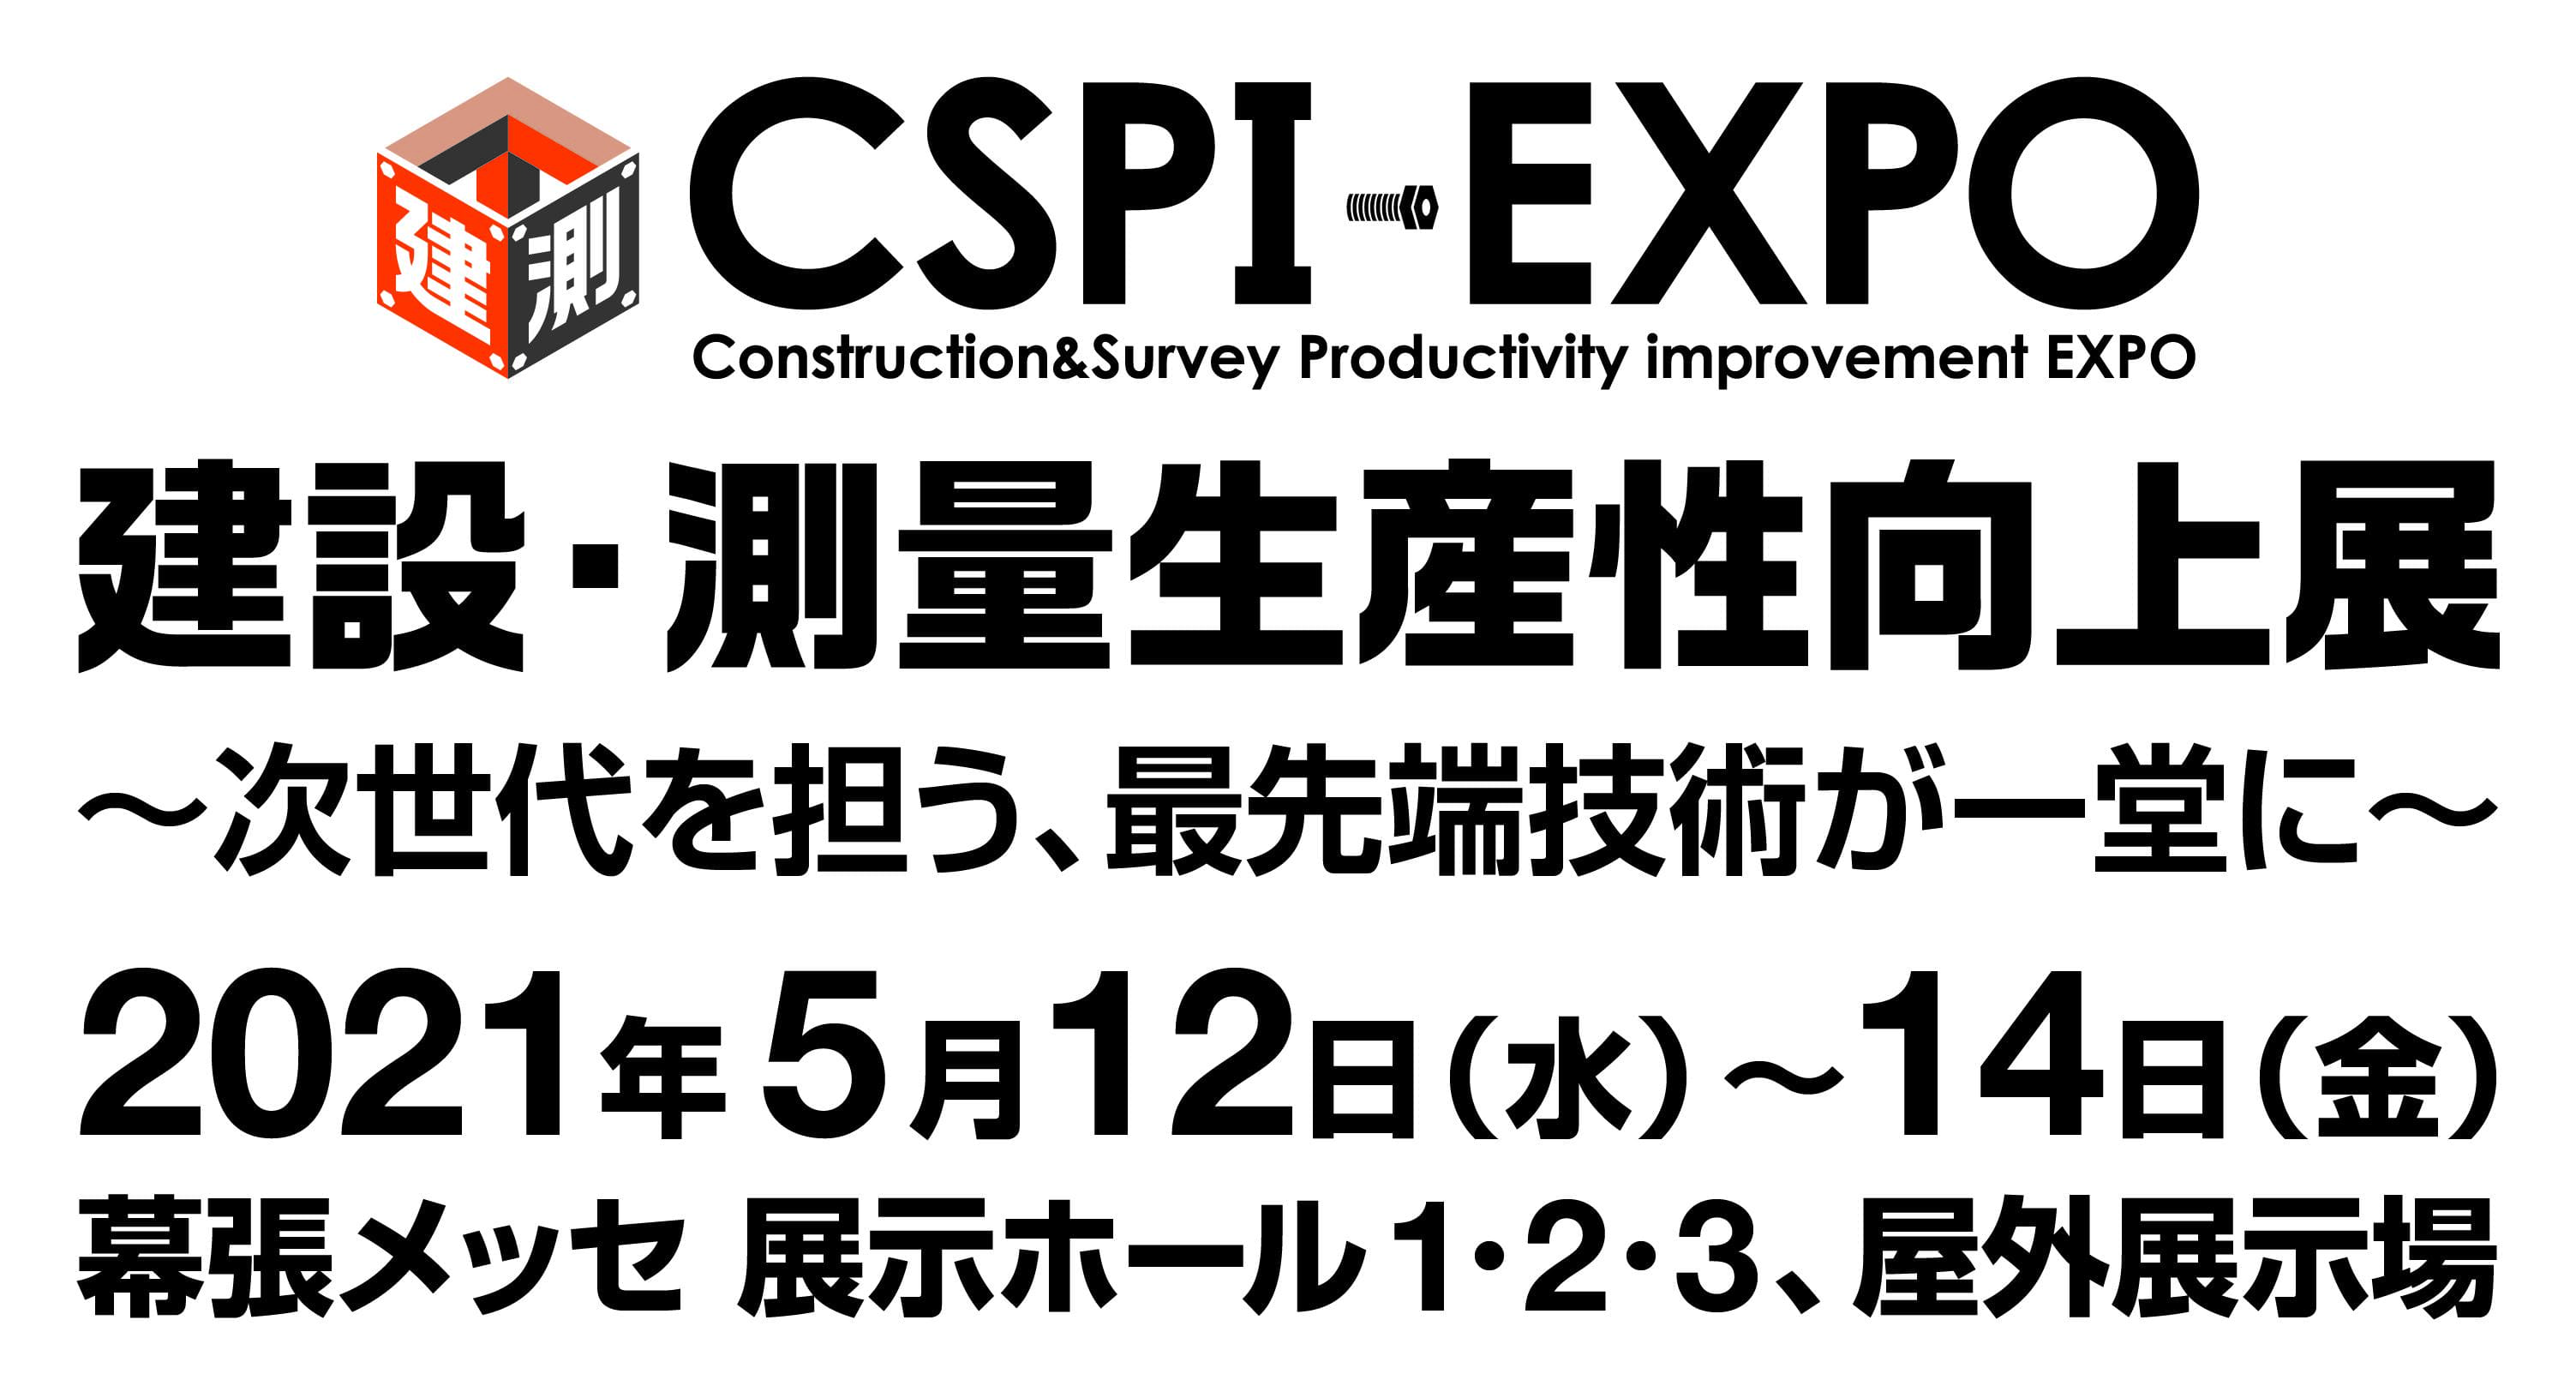 第3回 建設・測量生産性向上展 (CSPI-EXPO 2021) 出展のお知らせ【5/12(水)~5/14(金)】